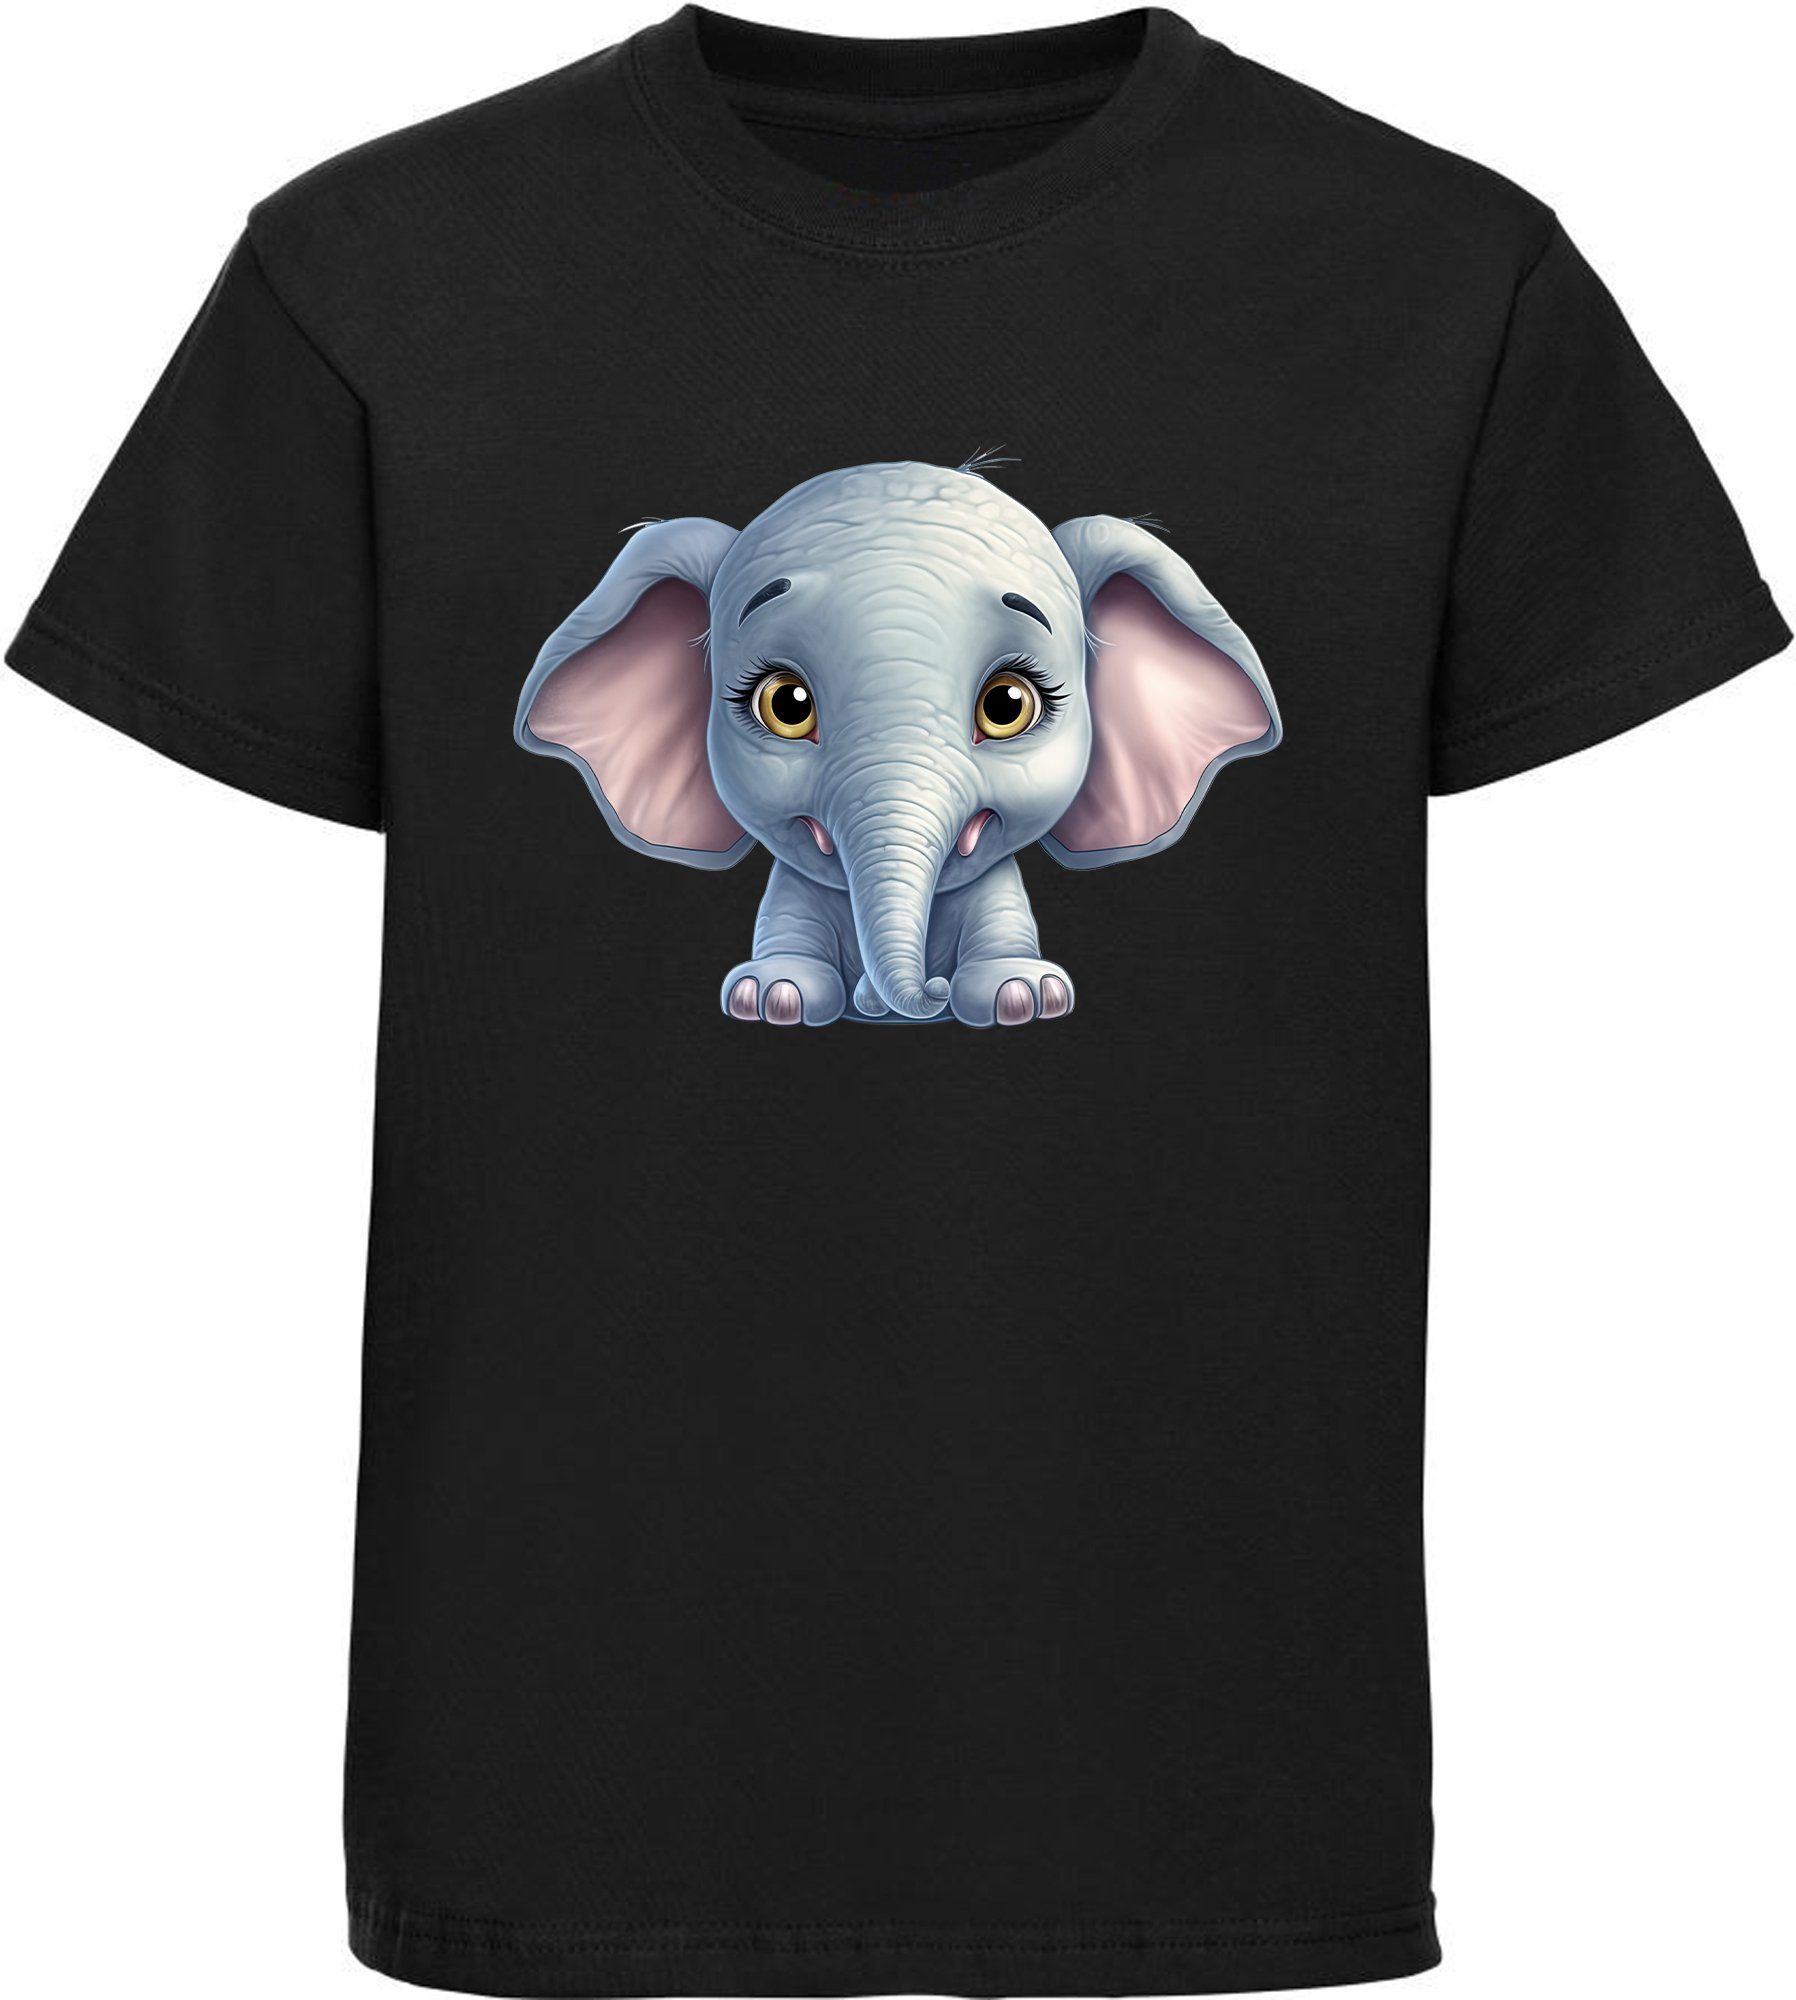 MyDesign24 T-Shirt Aufdruck, Shirt Baumwollshirt Wildtier schwarz - bedruckt Elefant mit Kinder Print Baby i272